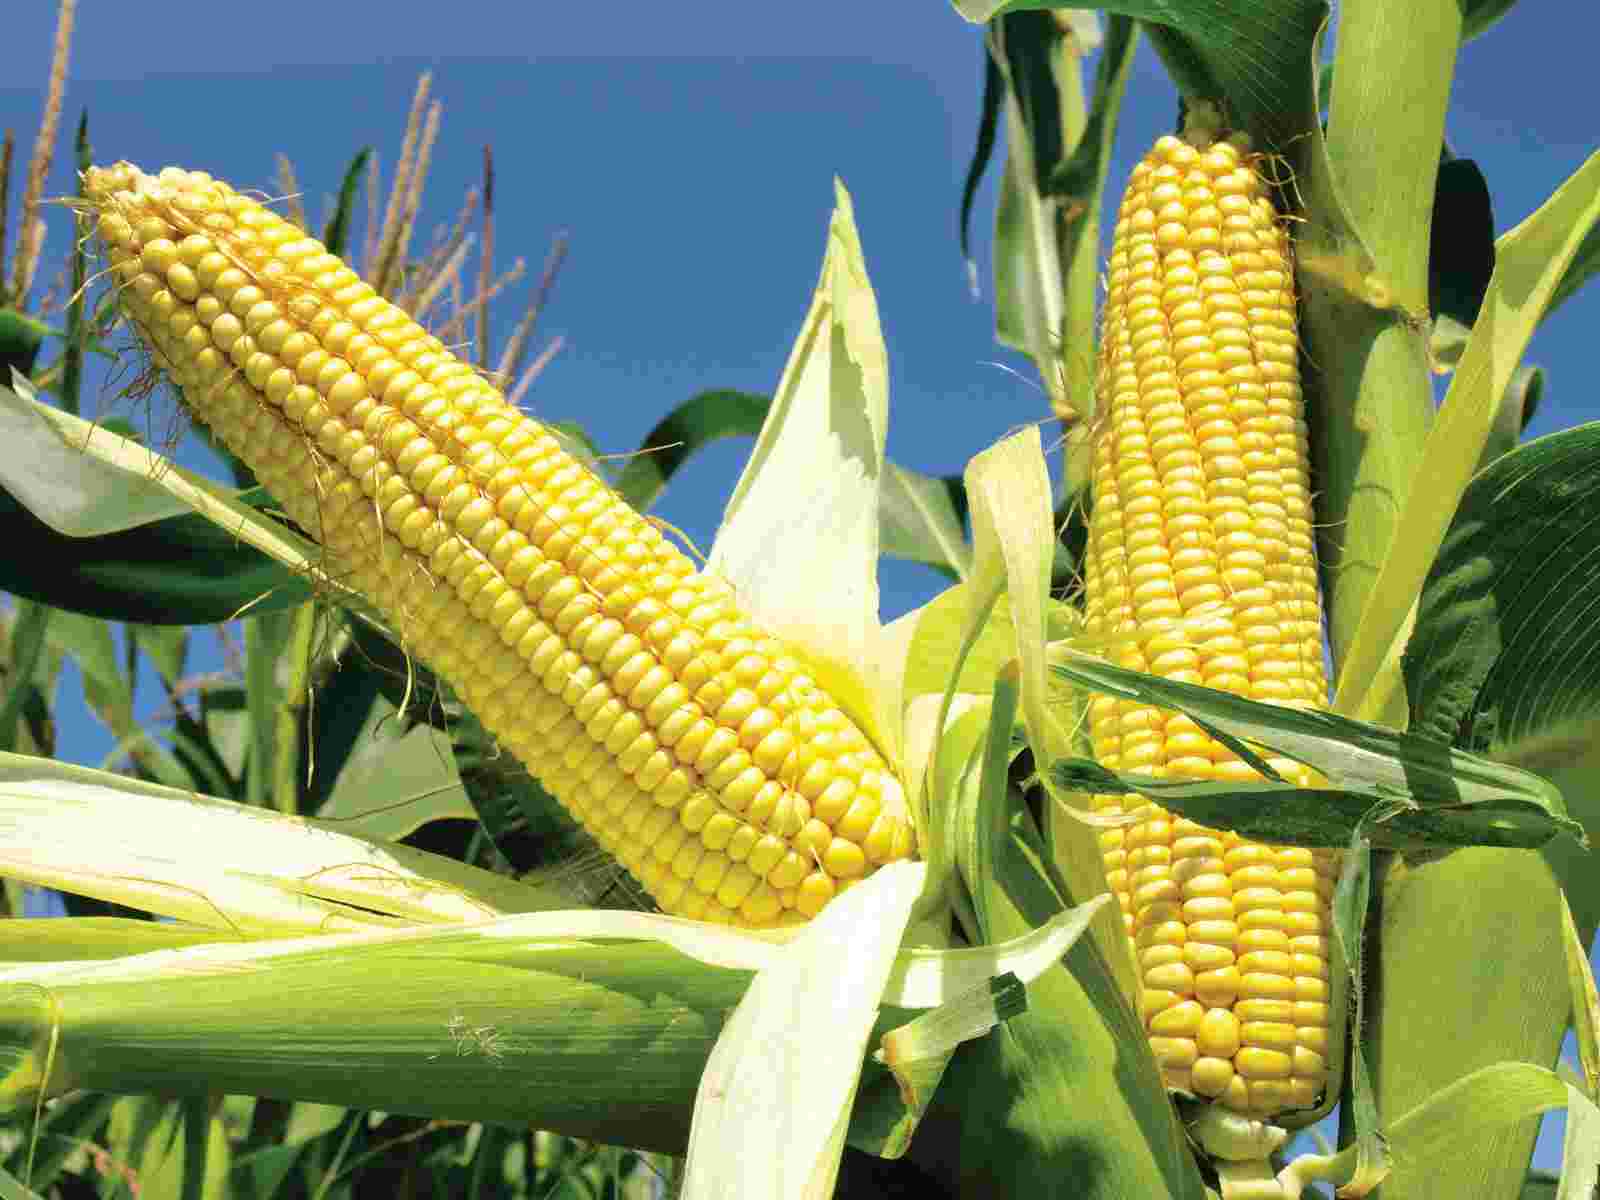 Ear Of Corn